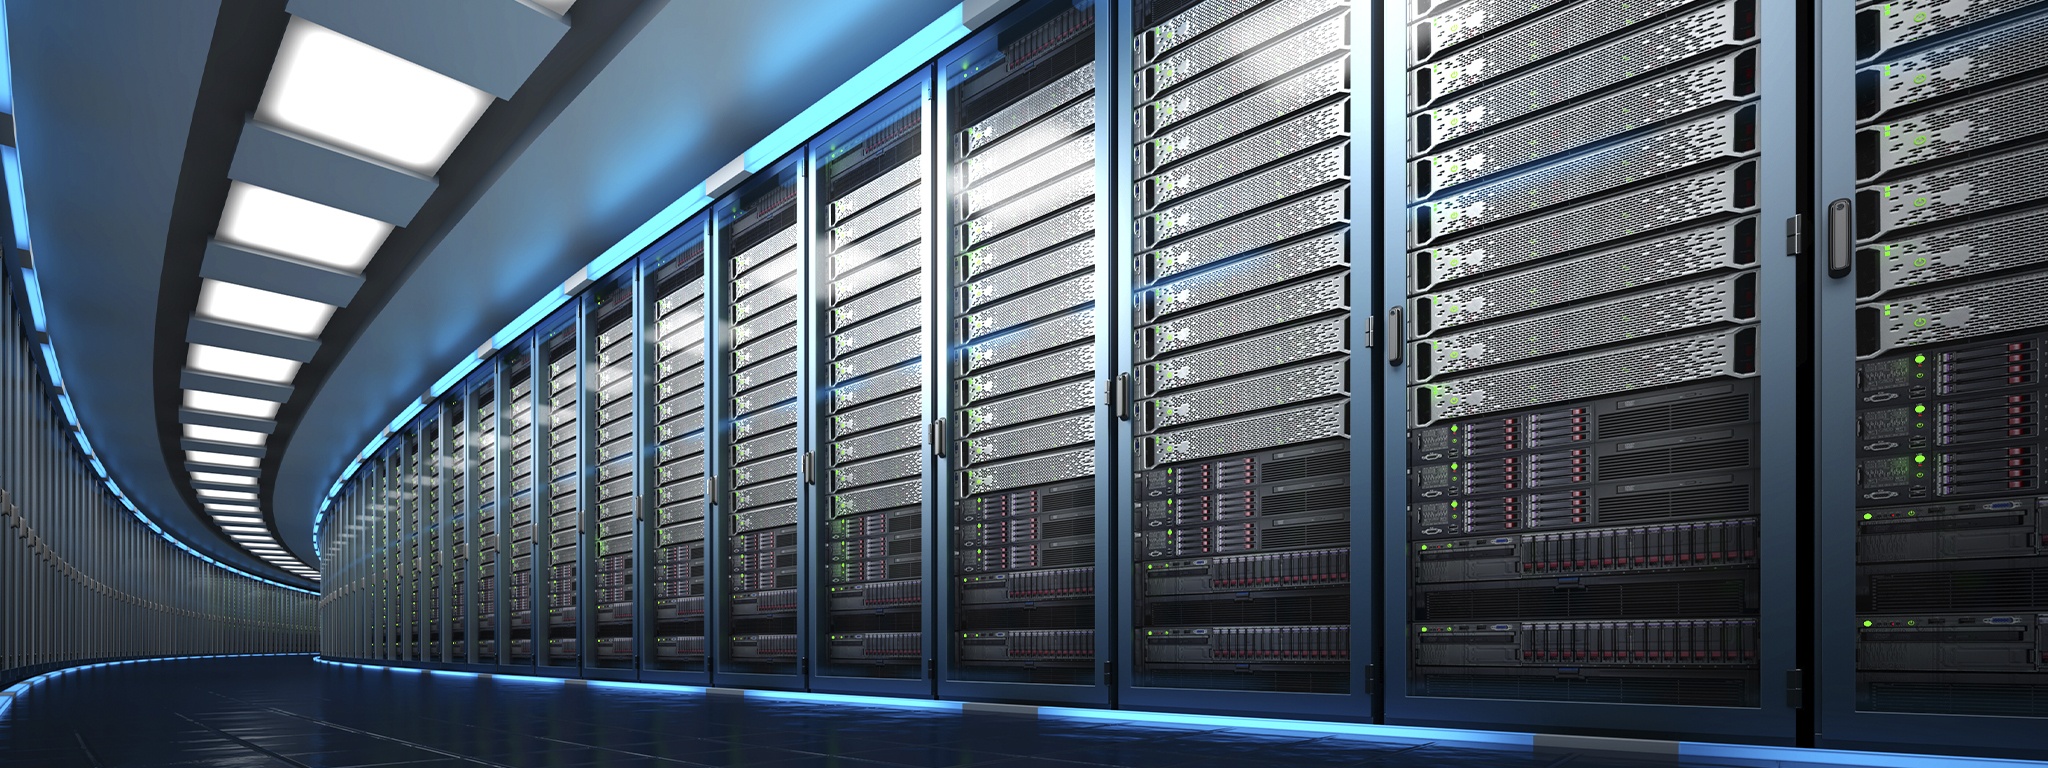 Трехмерное изображение центра обработки данных, показывающее большую серверную комнату с длинной линией серверных стоек